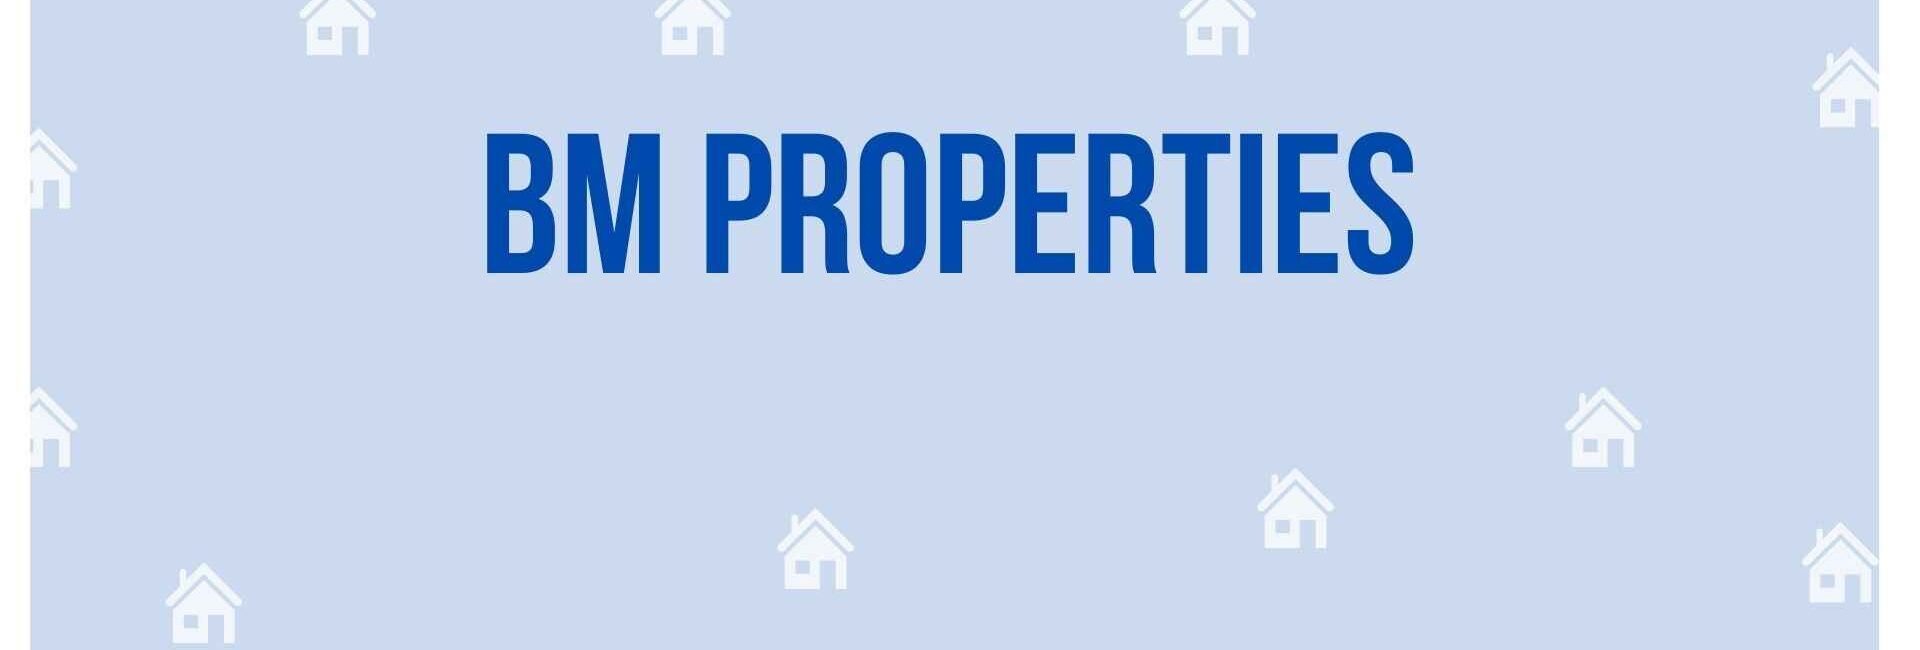 BM Properties - Property Dealer in Noida